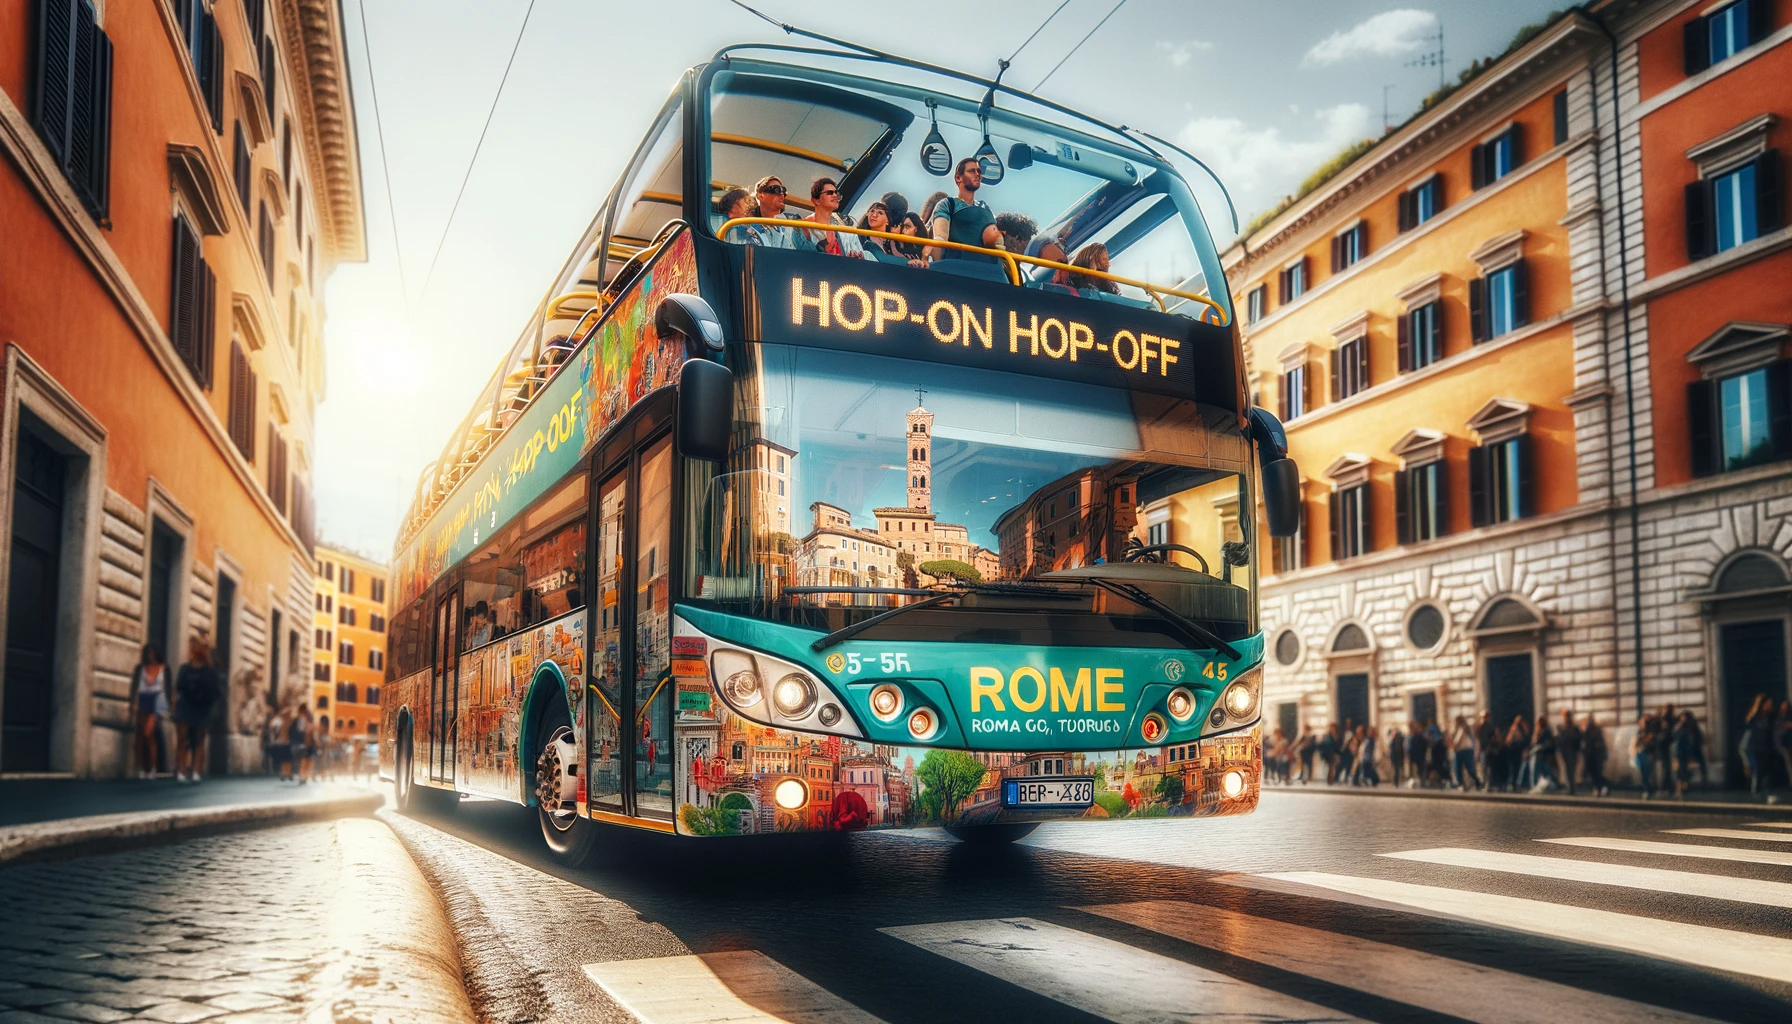 Bus touristique hop-on hop-off circulant dans une rue animée de Rome, idéal pour explorer la ville